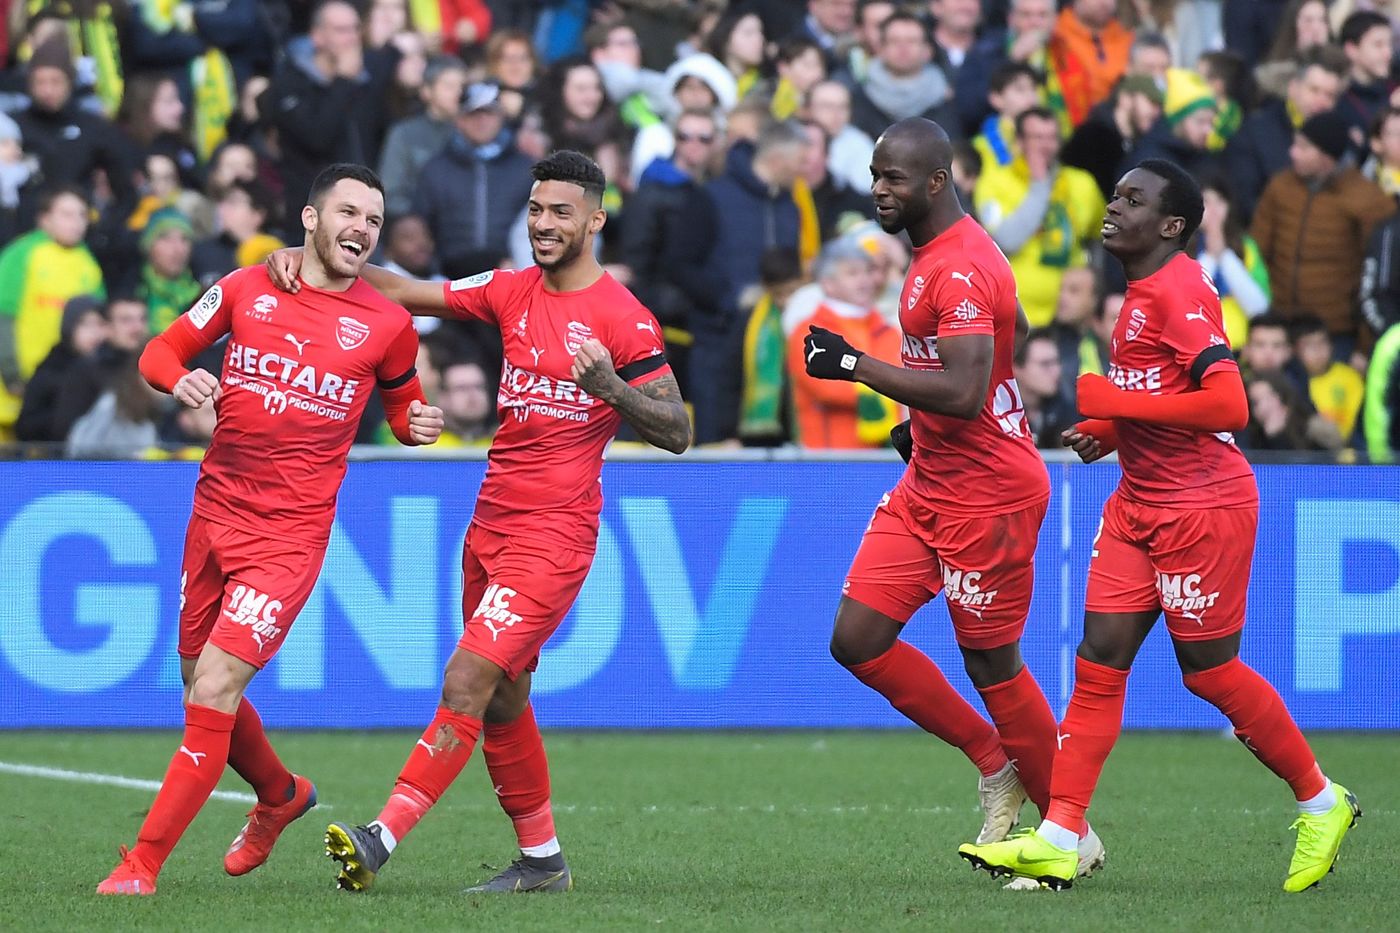 Nimes-Dijon 15 febbraio: si gioca per la 25 esima giornata della Serie A francese. I padroni di casa sono favoriti per i 3 punti in palio.